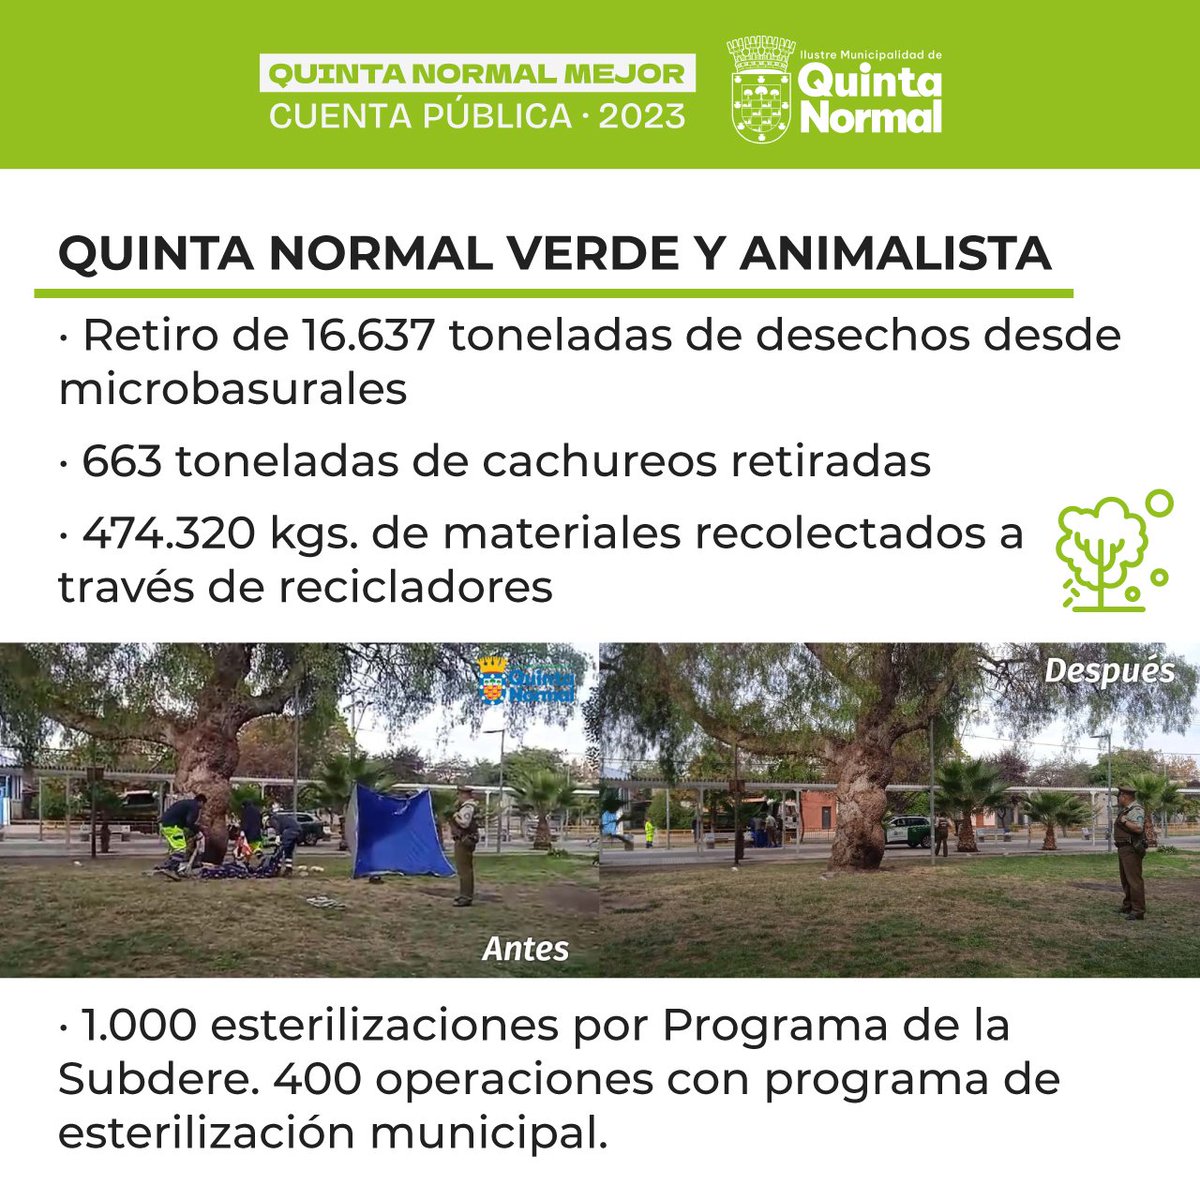 Una comuna verde, limpia, y animalista es parte de los ejes de nuestra gestión de Quinta Normal. #CuentaPúblicaQuintaNormal